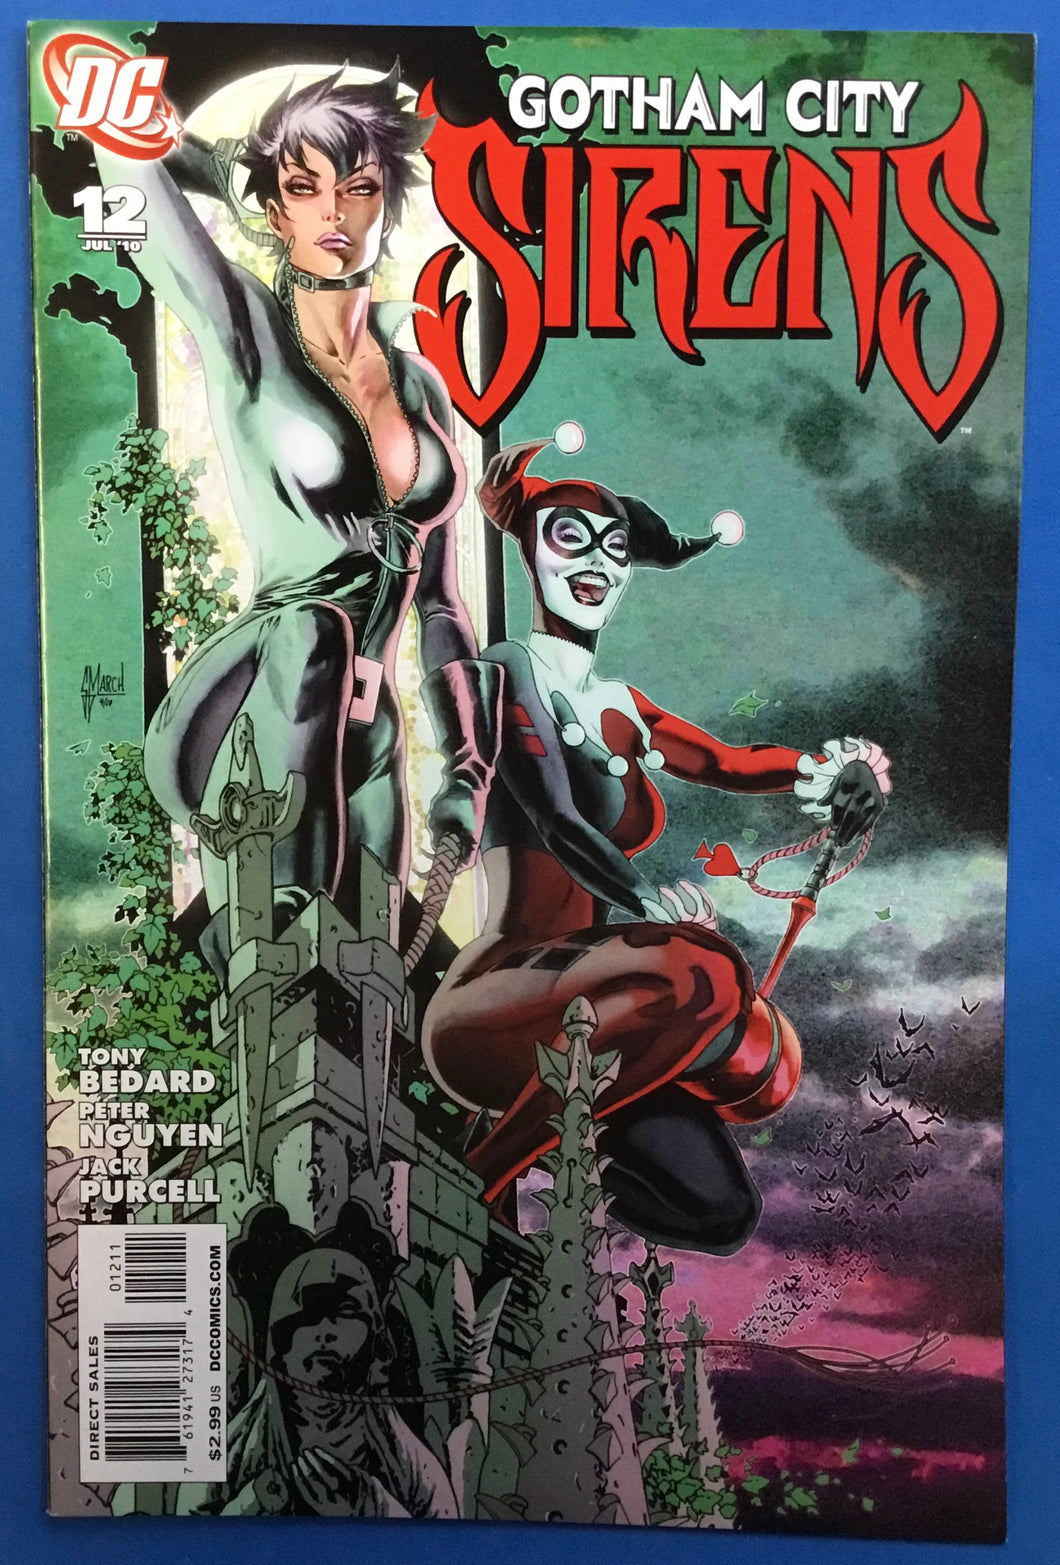 Gotham City Sirens No. #12 2010 DC Comics